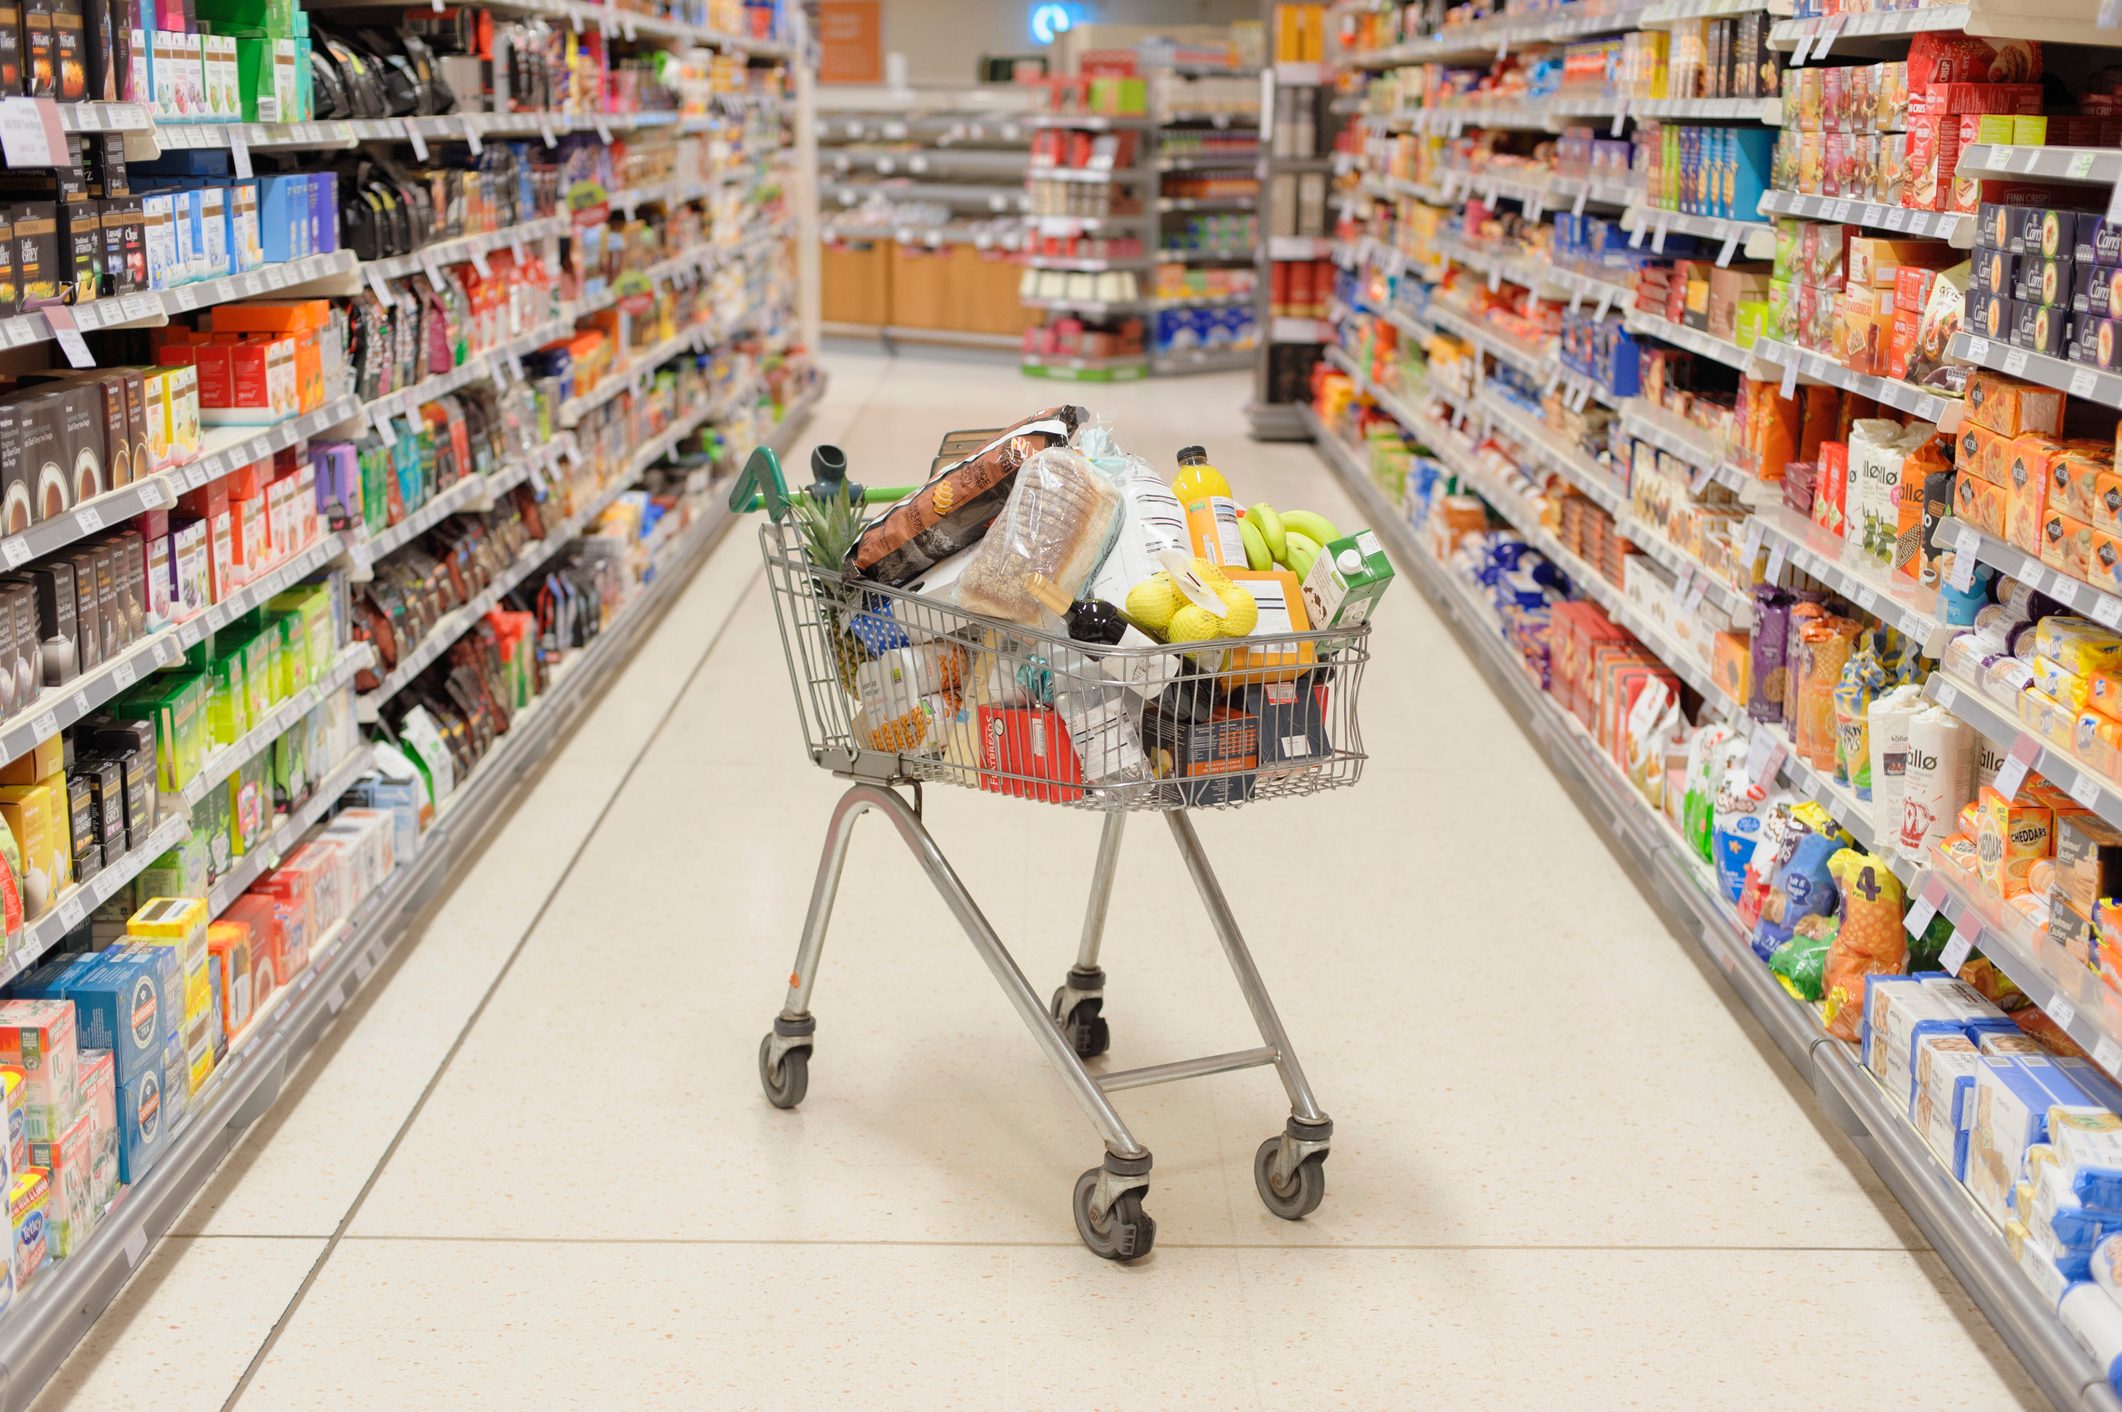 Full shopping cart in supermarket aisle